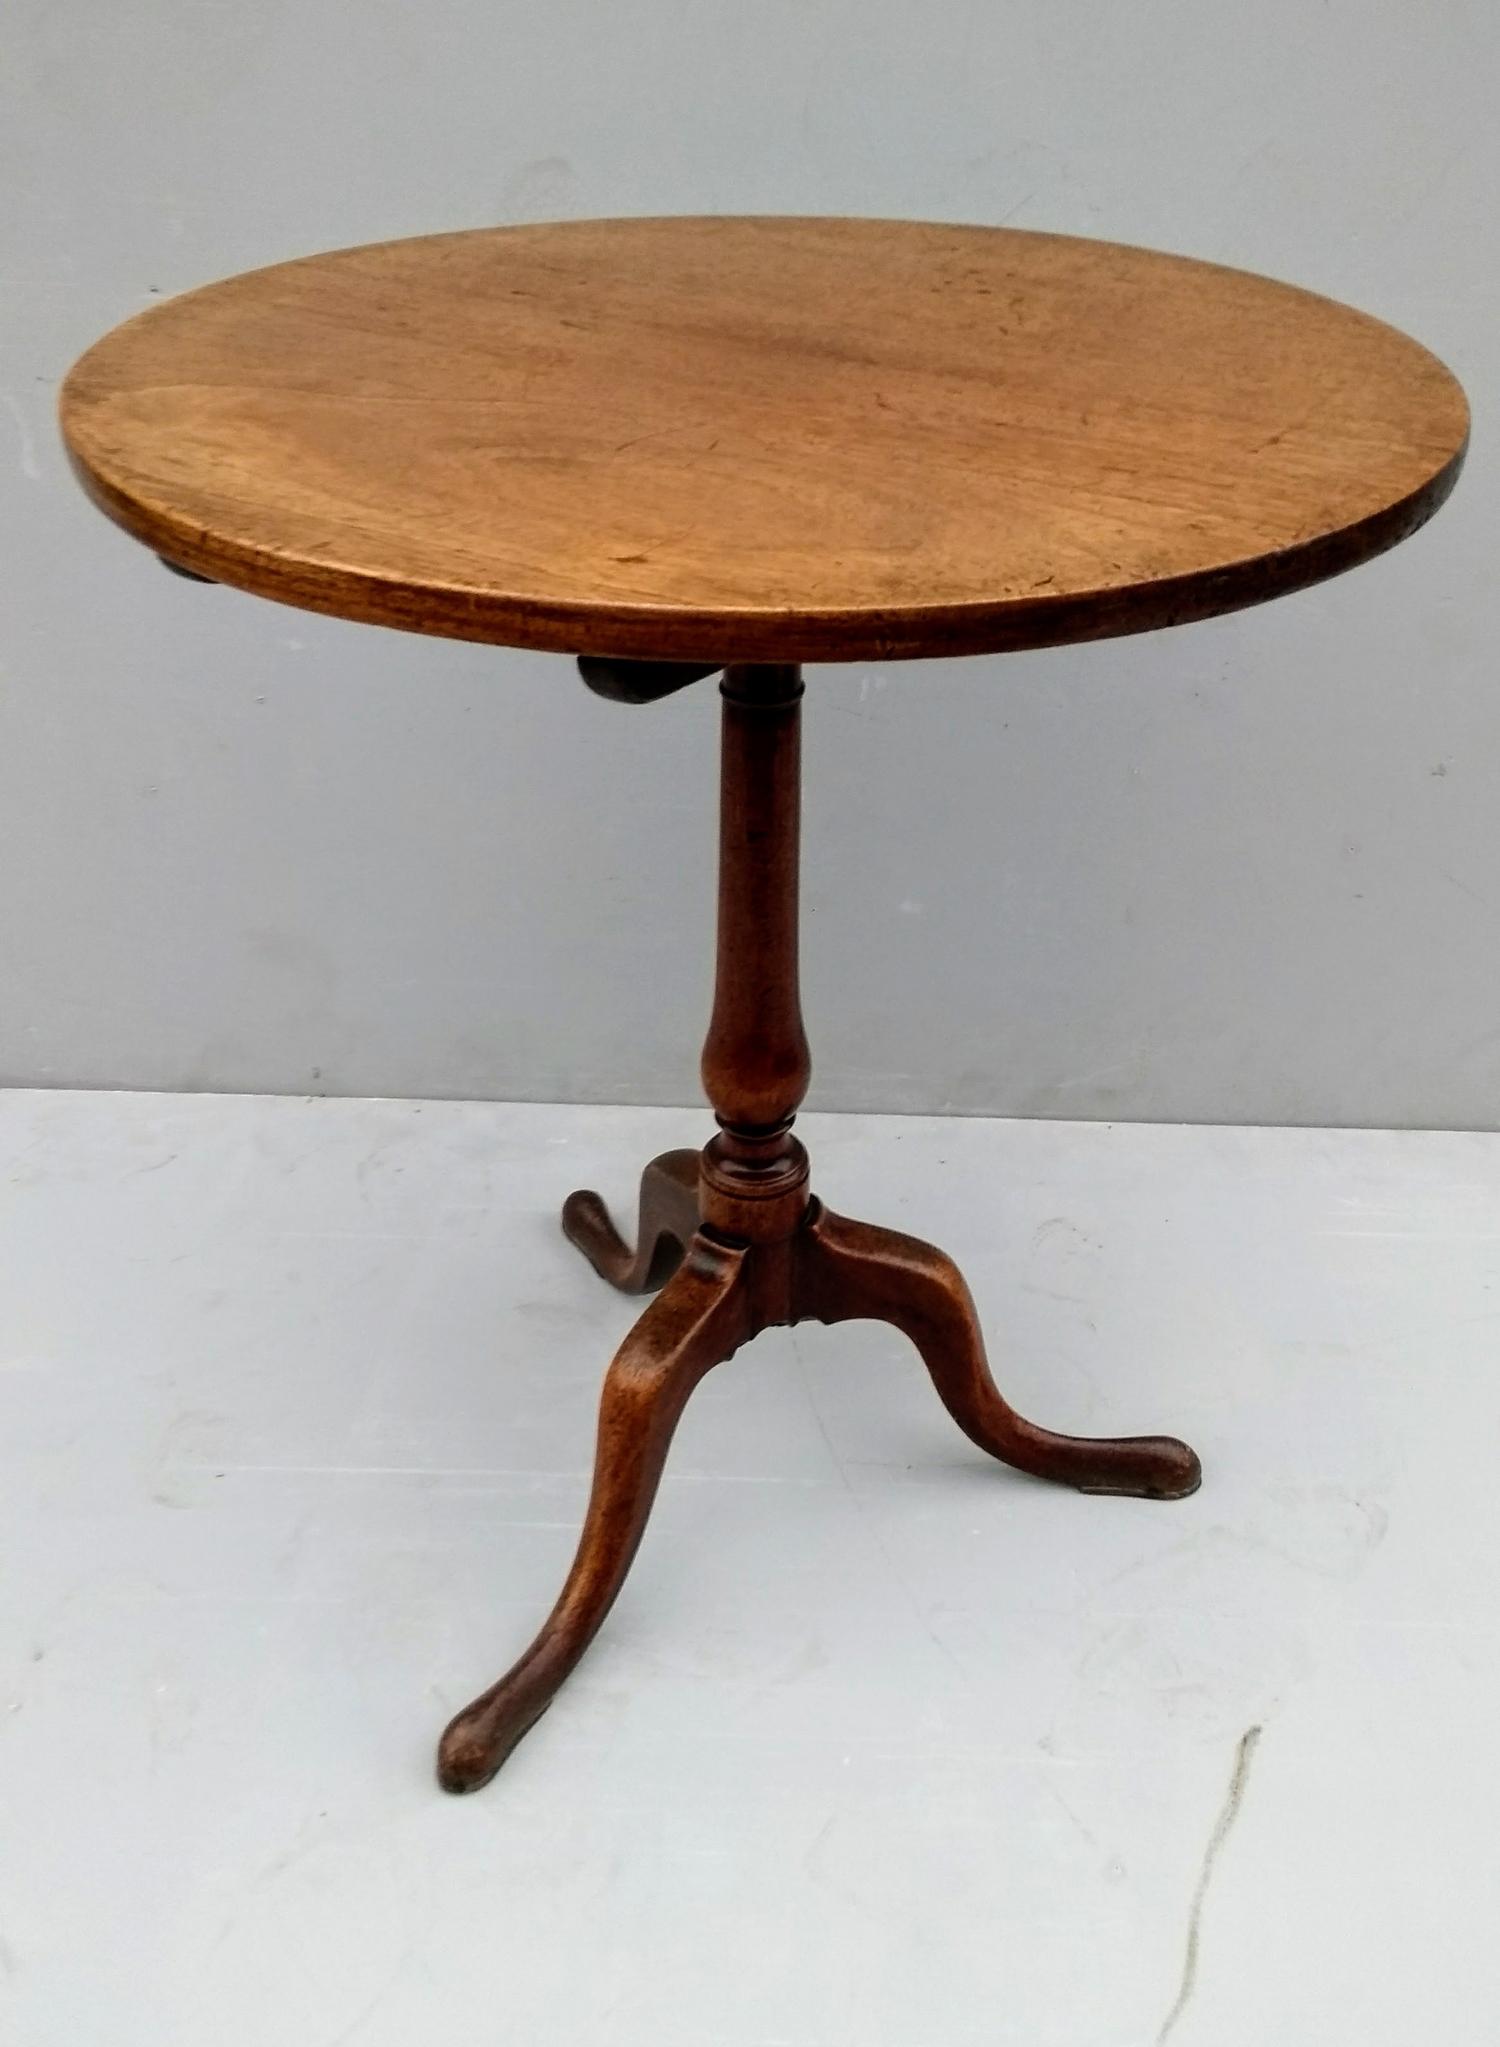 A Georgian mahogany circular tripod table, 70 H x 61 cm diameter